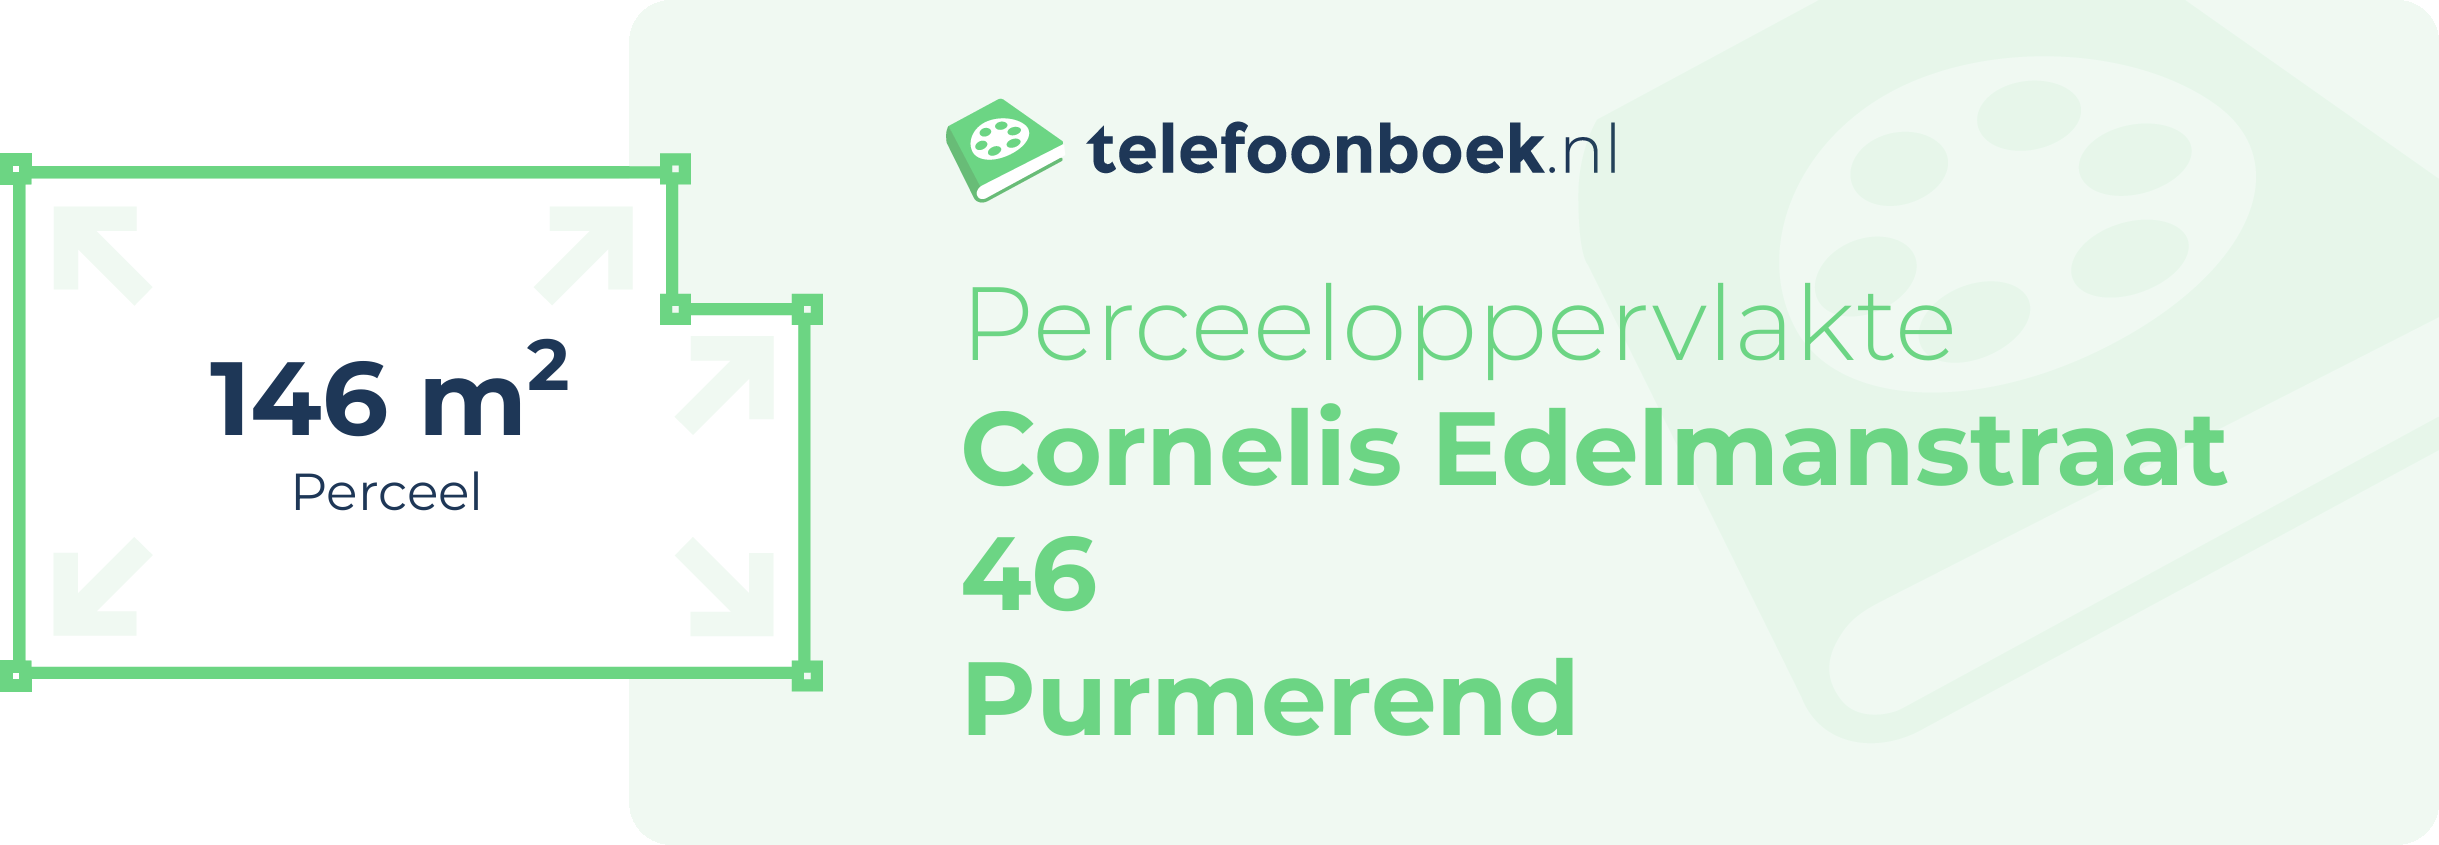 Perceeloppervlakte Cornelis Edelmanstraat 46 Purmerend